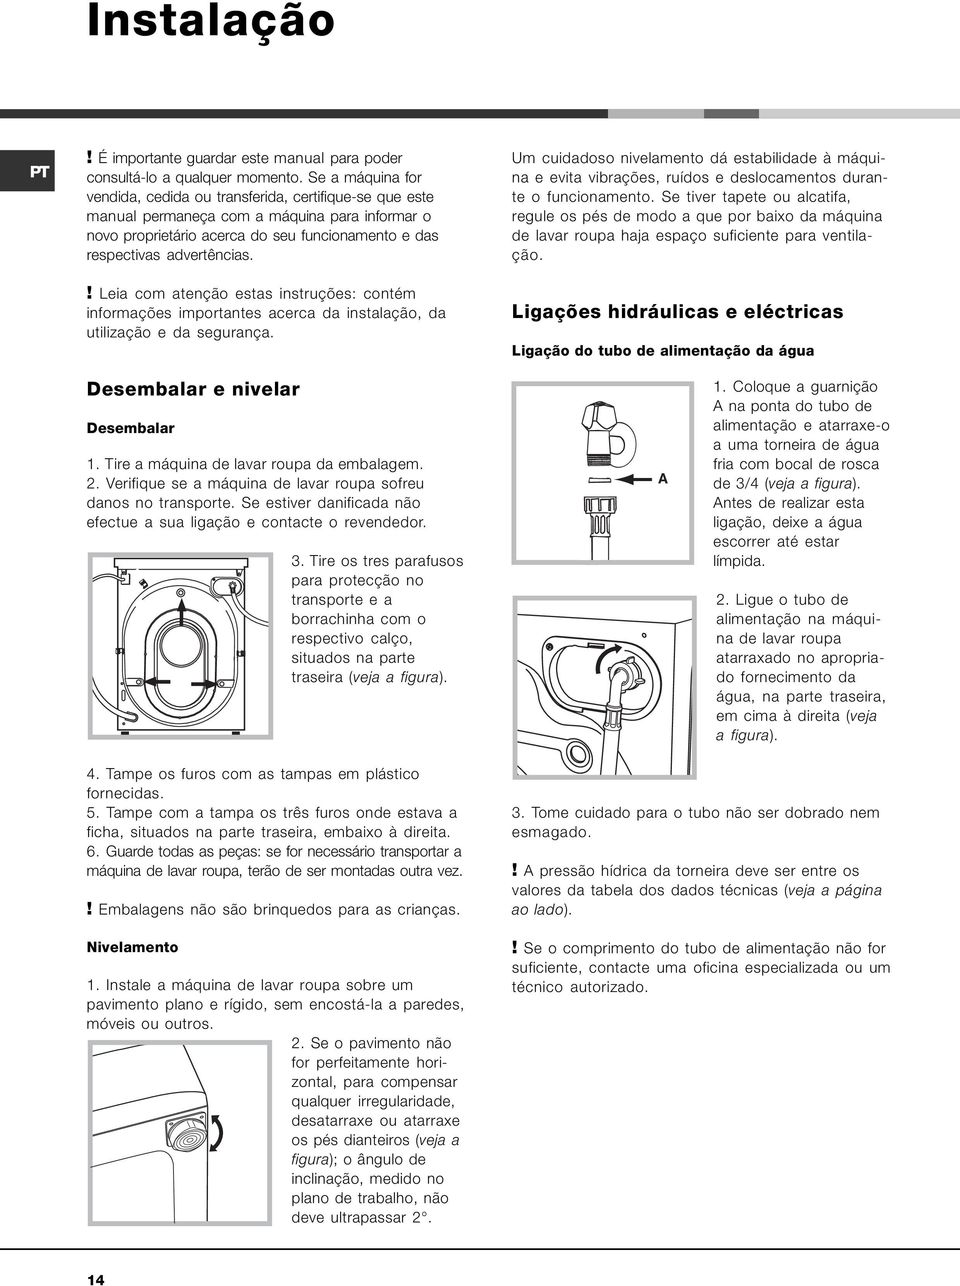 ! Leia com atenção estas instruções: contém informações importantes acerca da instalação, da utilização e da segurança.